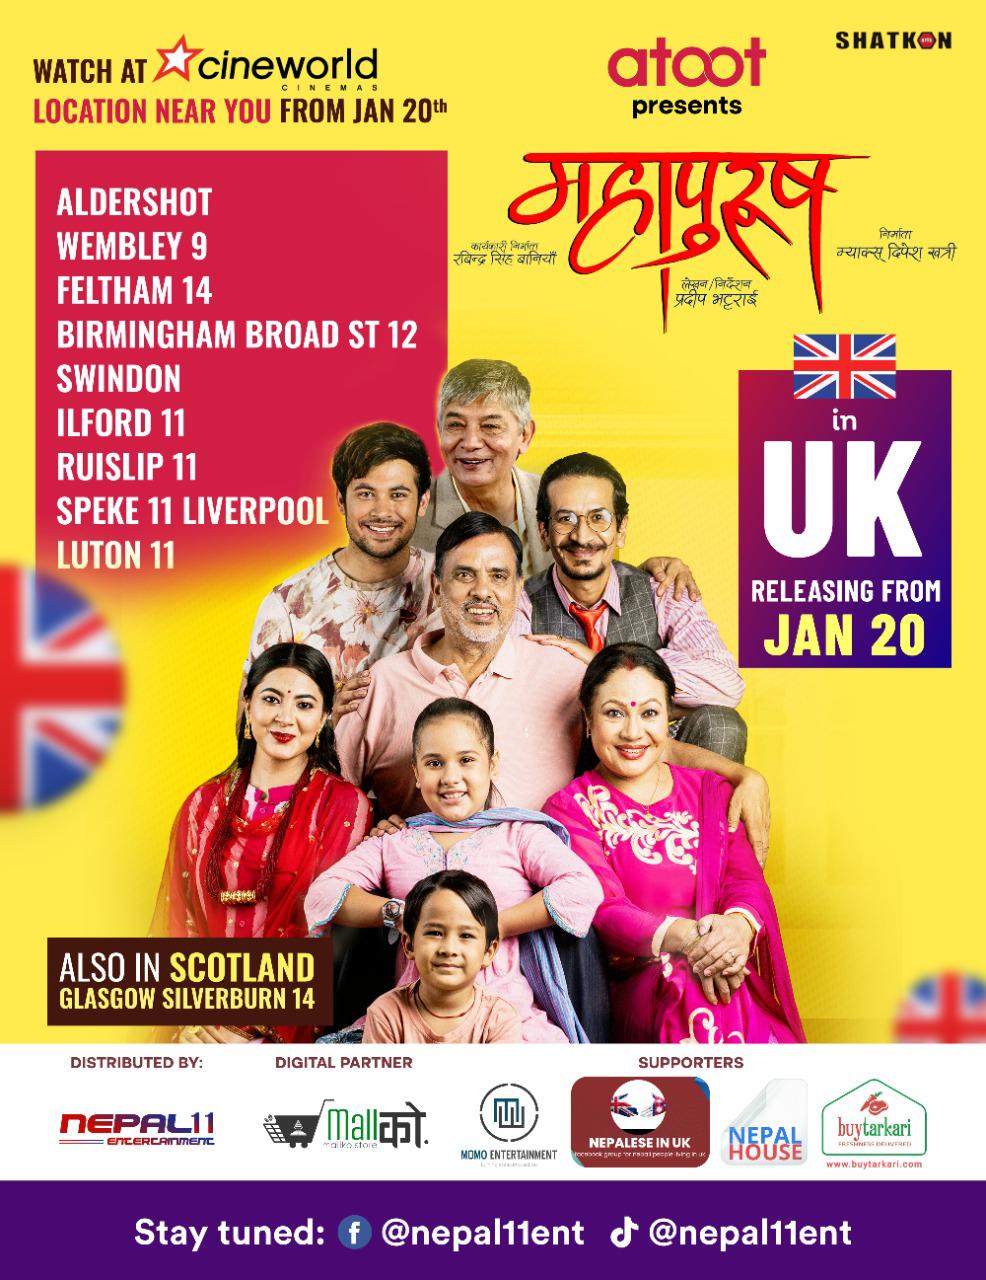 Nepali Movies in UK, Started with Mahapurush screening in 10 locations.